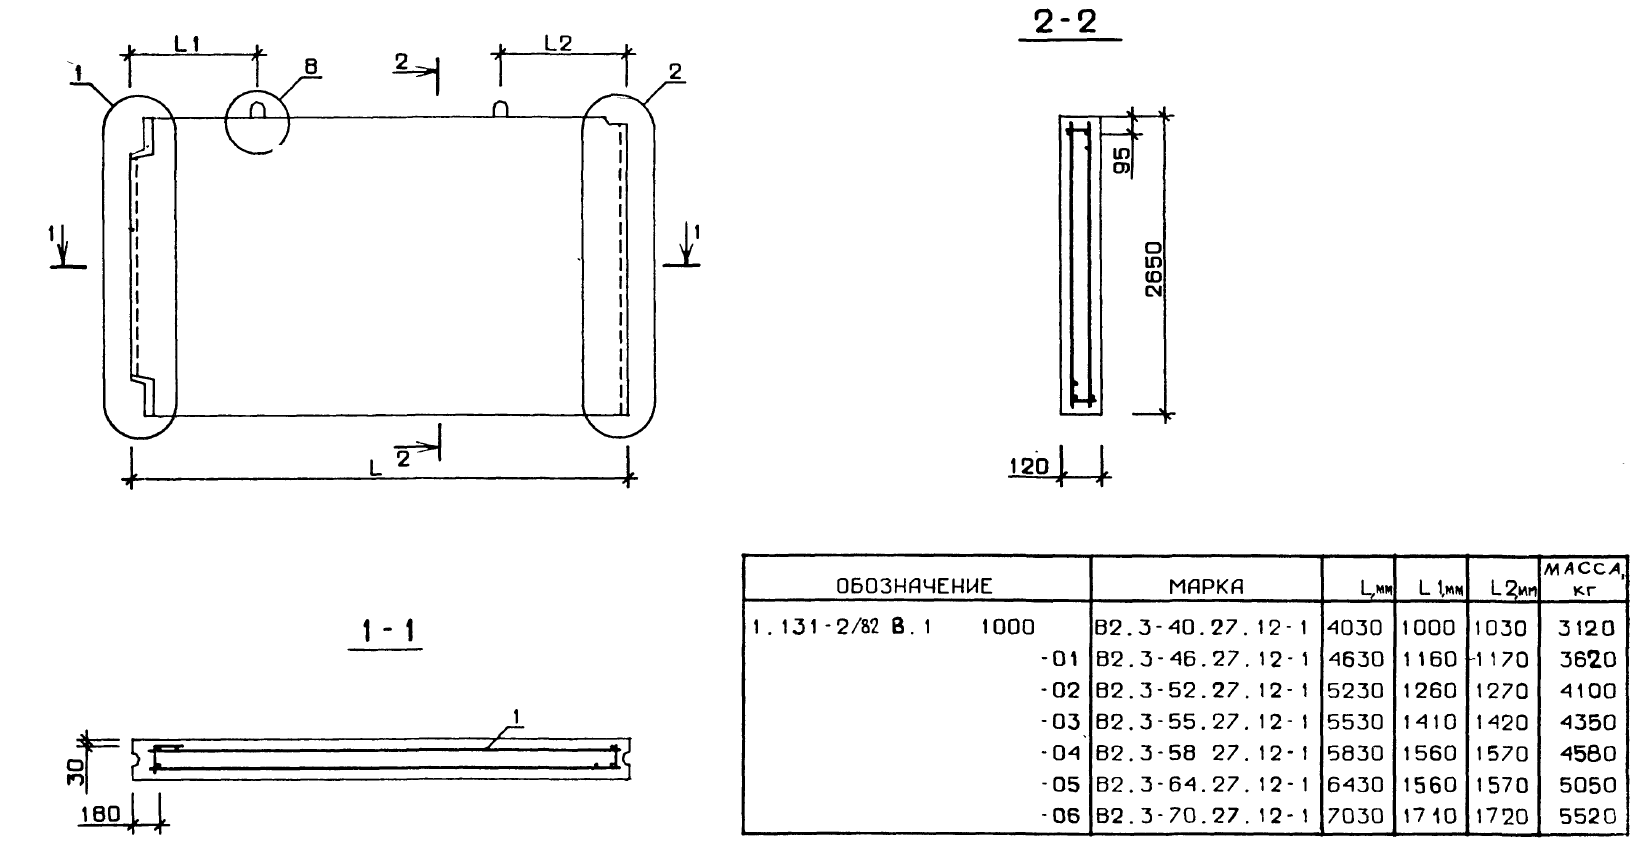 Внутренняя поперечная стеновая панель В2.3-52.27.12-1 серия 1.131-2/82